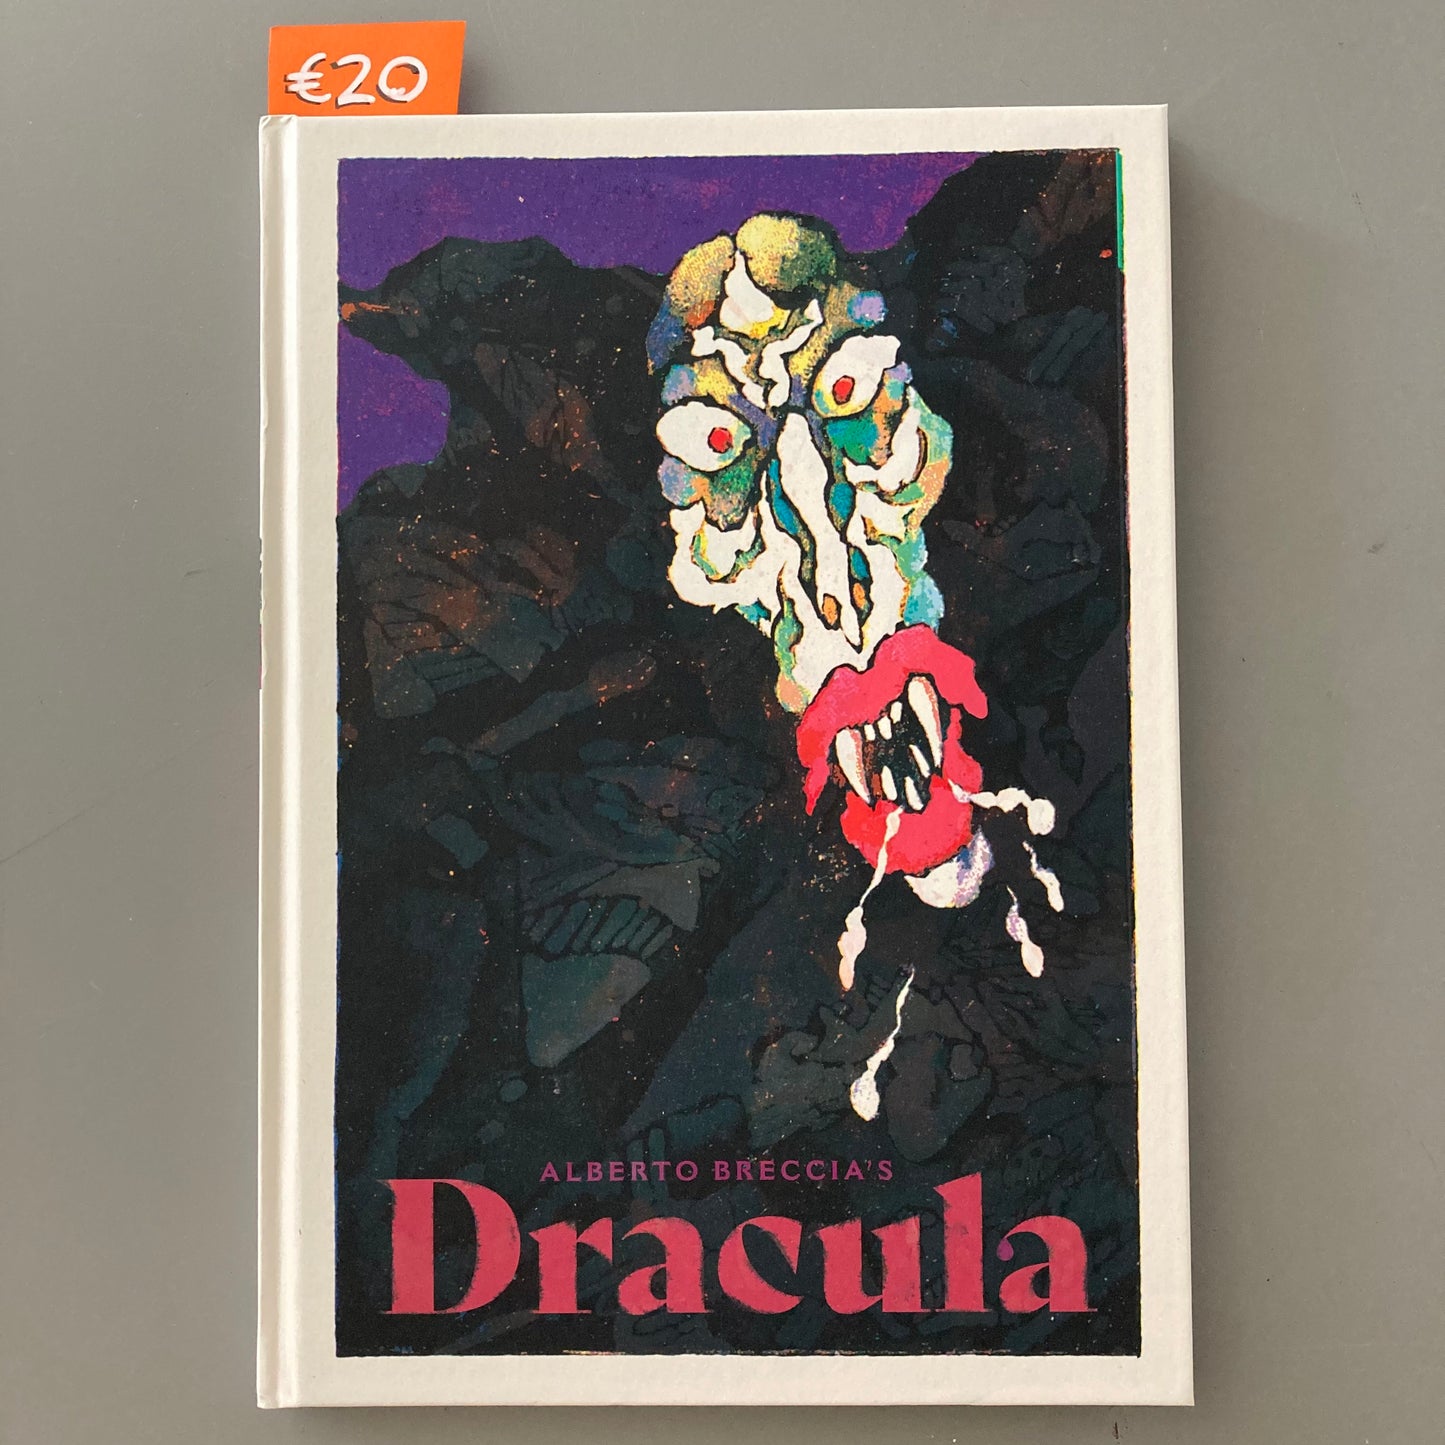 Alberto Breccia’s Dracula